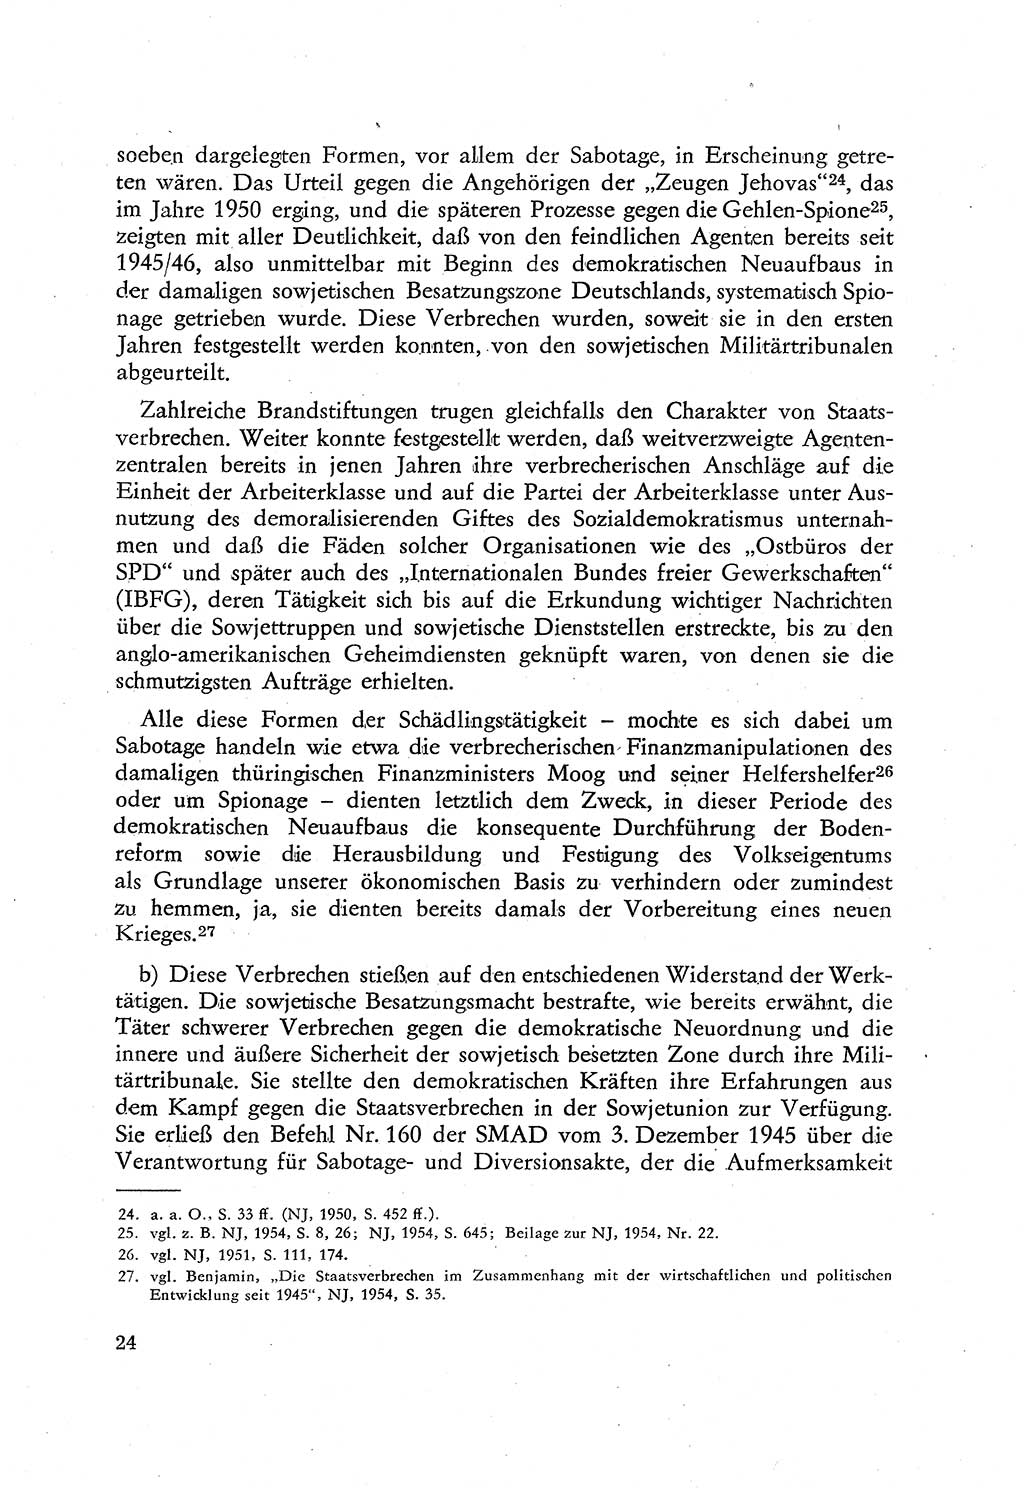 Beiträge zum Strafrecht [Deutsche Demokratische Republik (DDR)], Staatsverbrechen 1959, Seite 24 (Beitr. Strafr. DDR St.-Verbr. 1959, S. 24)